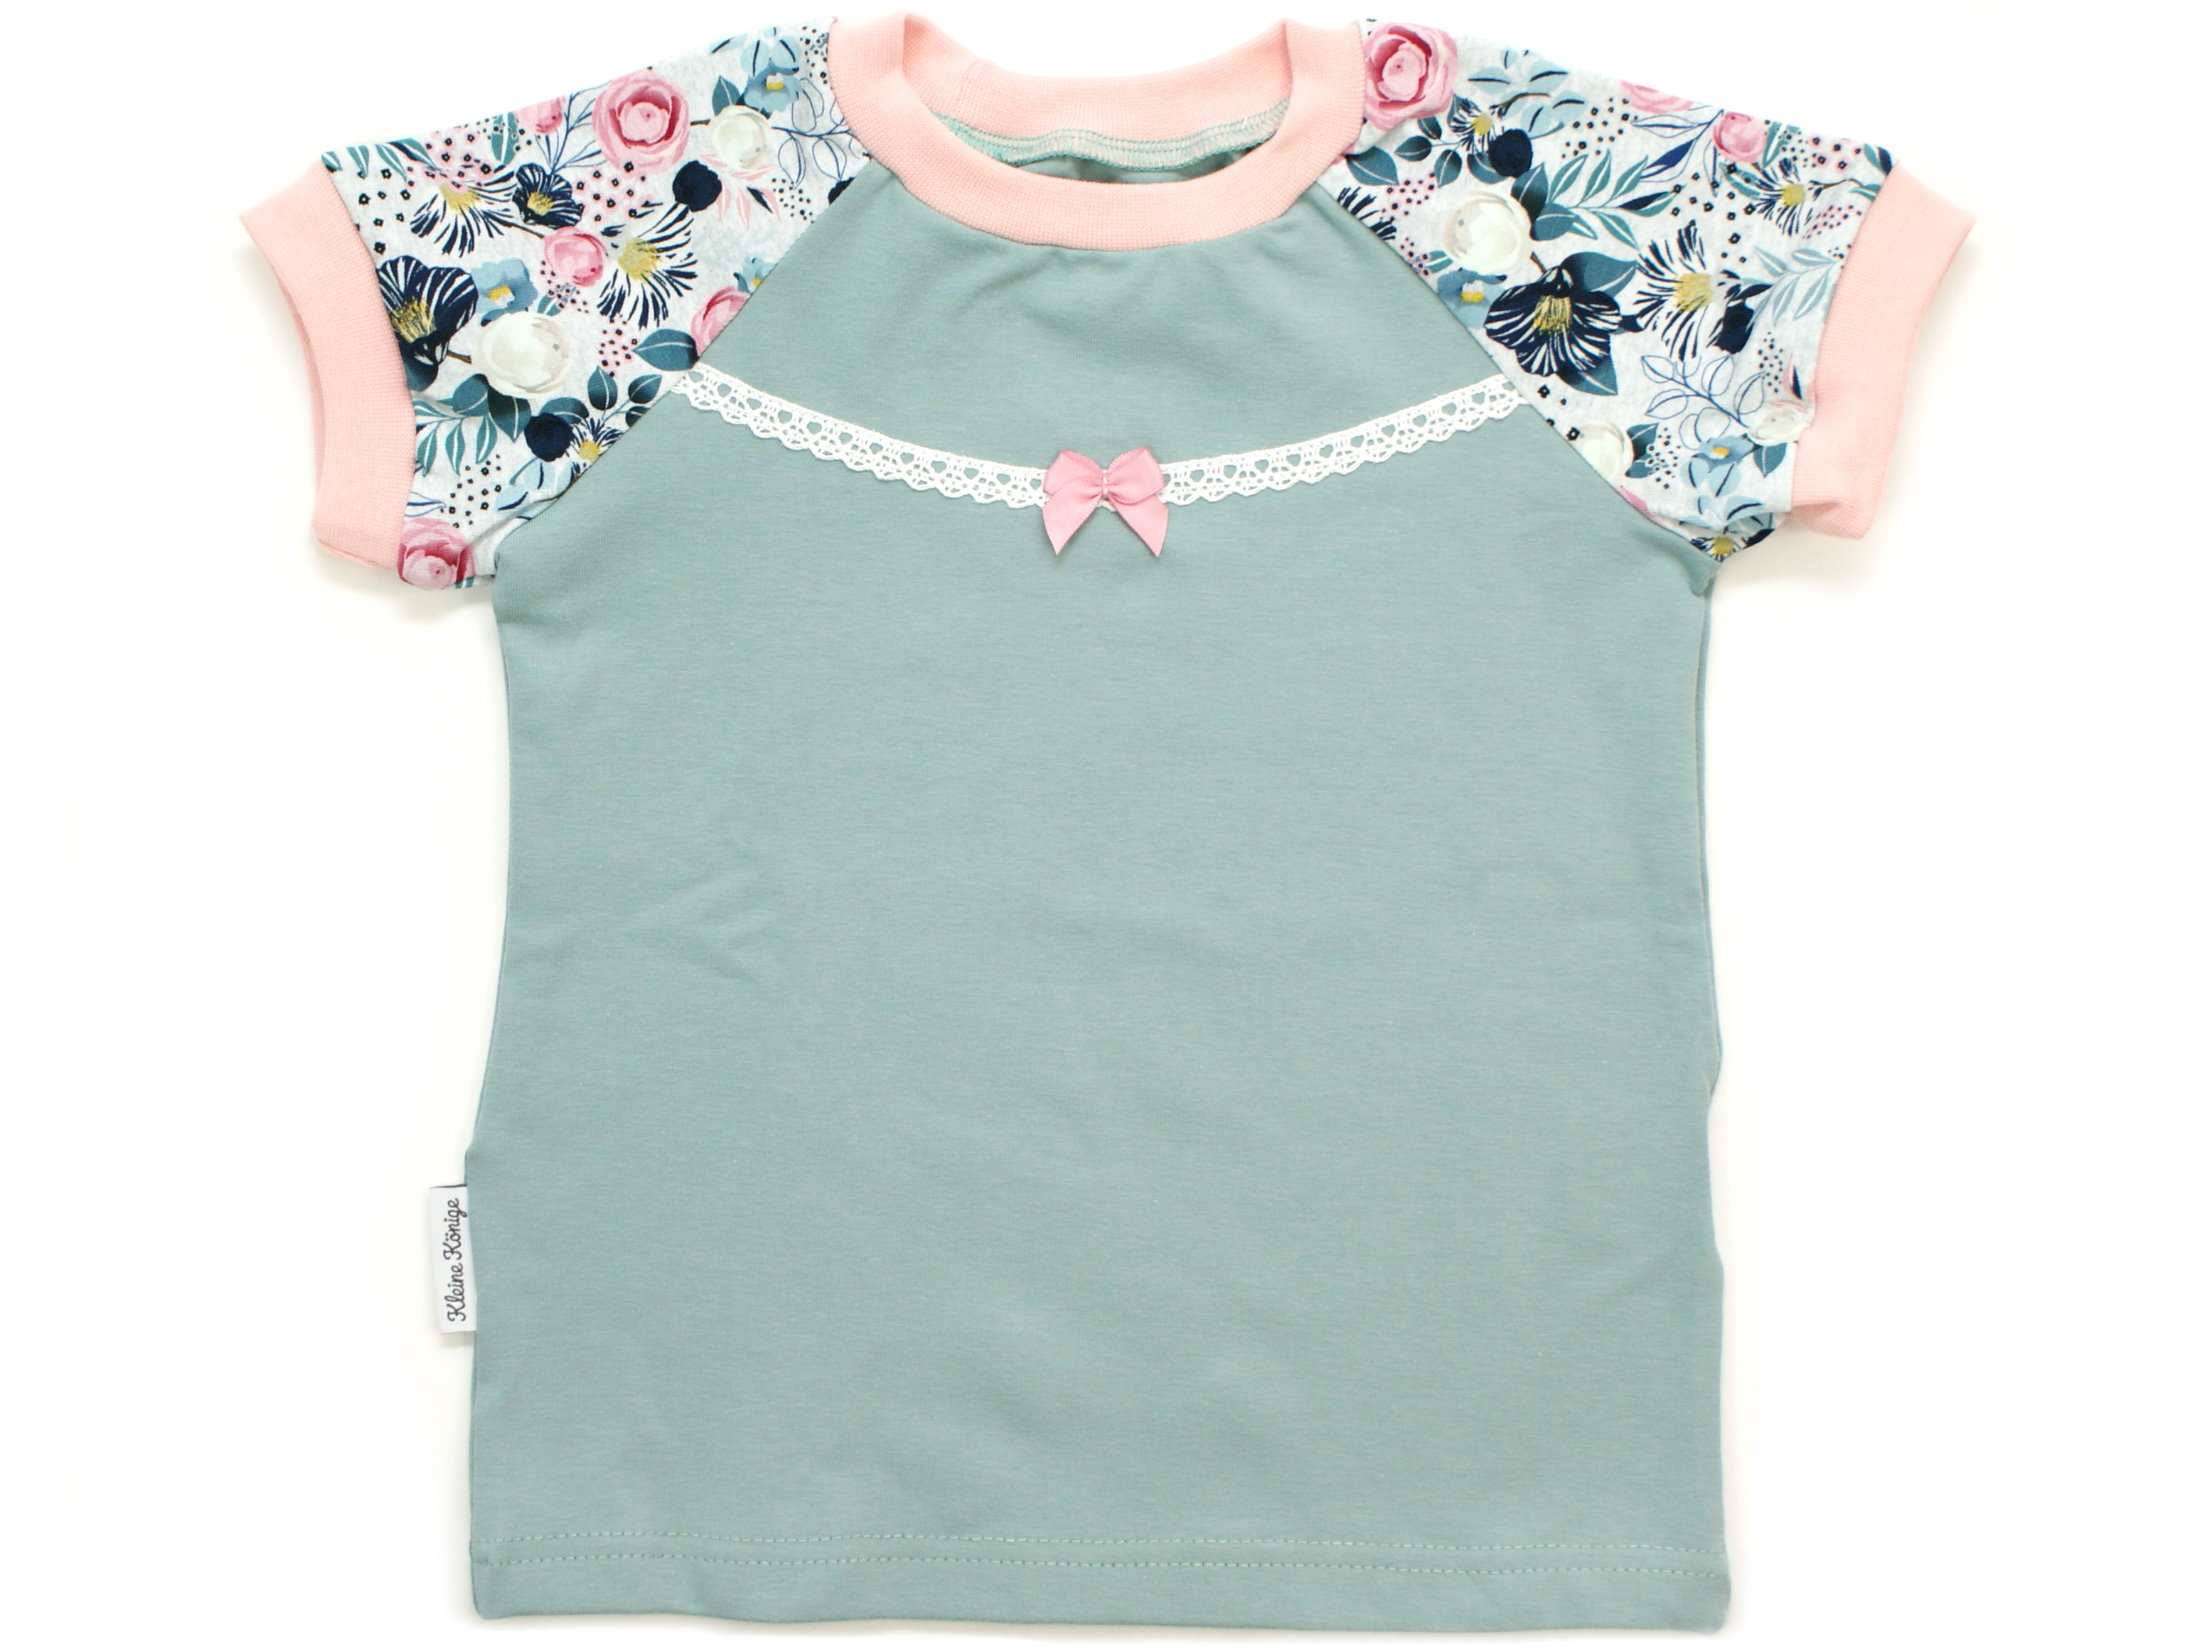 Kinder T-Shirt Blumen "Charming Flowers" mint rosé